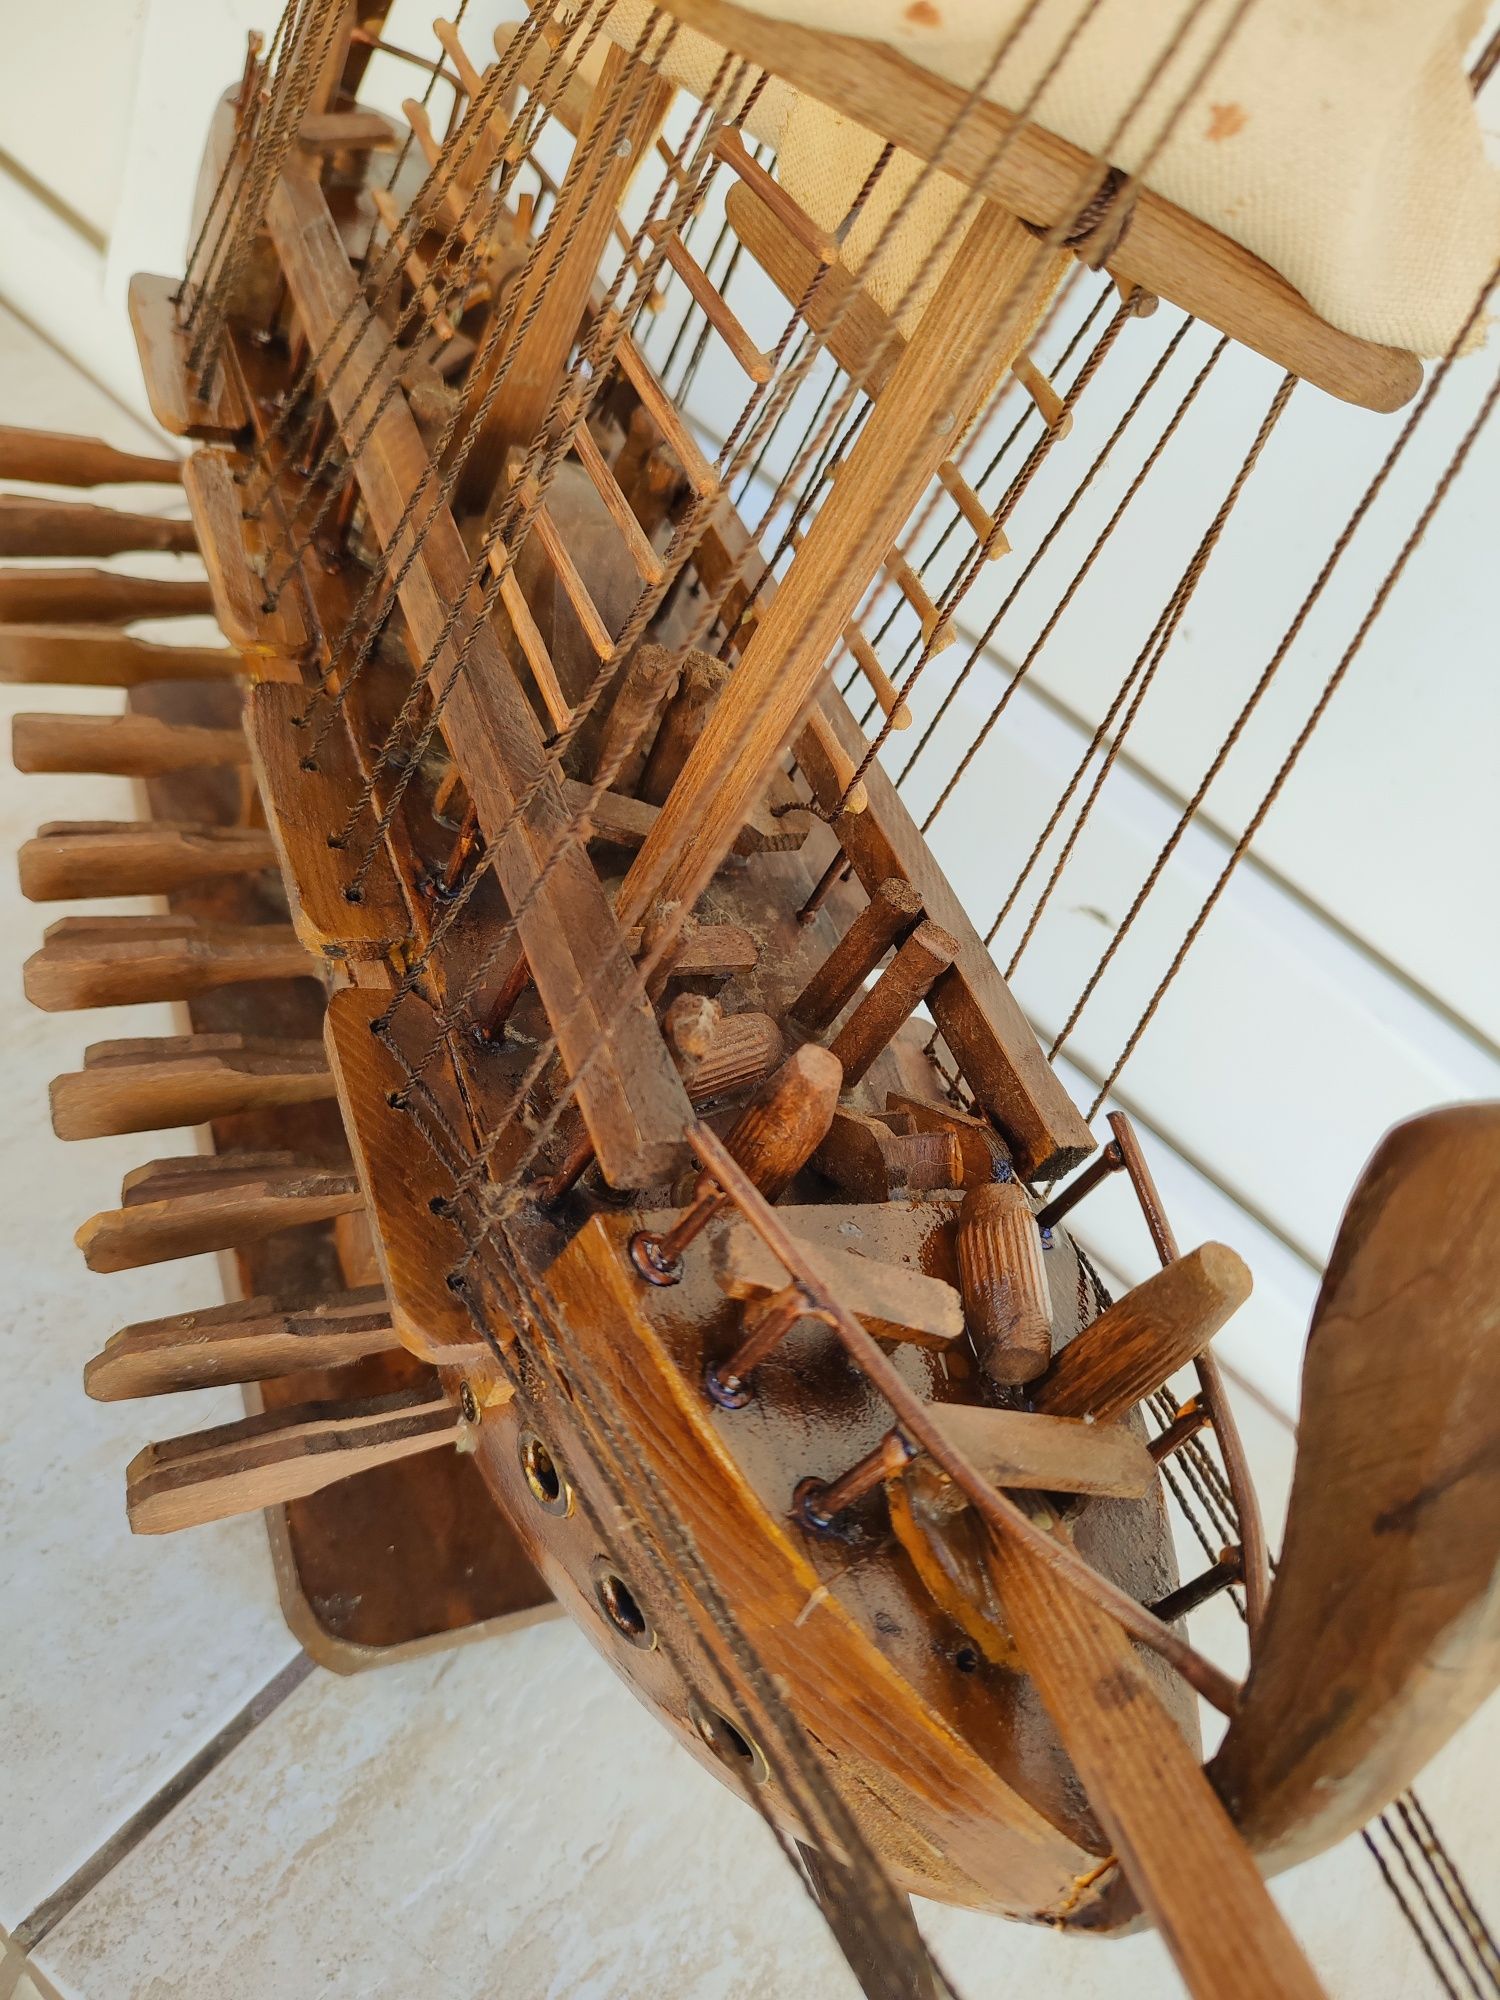 Macheta corabie cu panze lemn manufactura.64/60cm